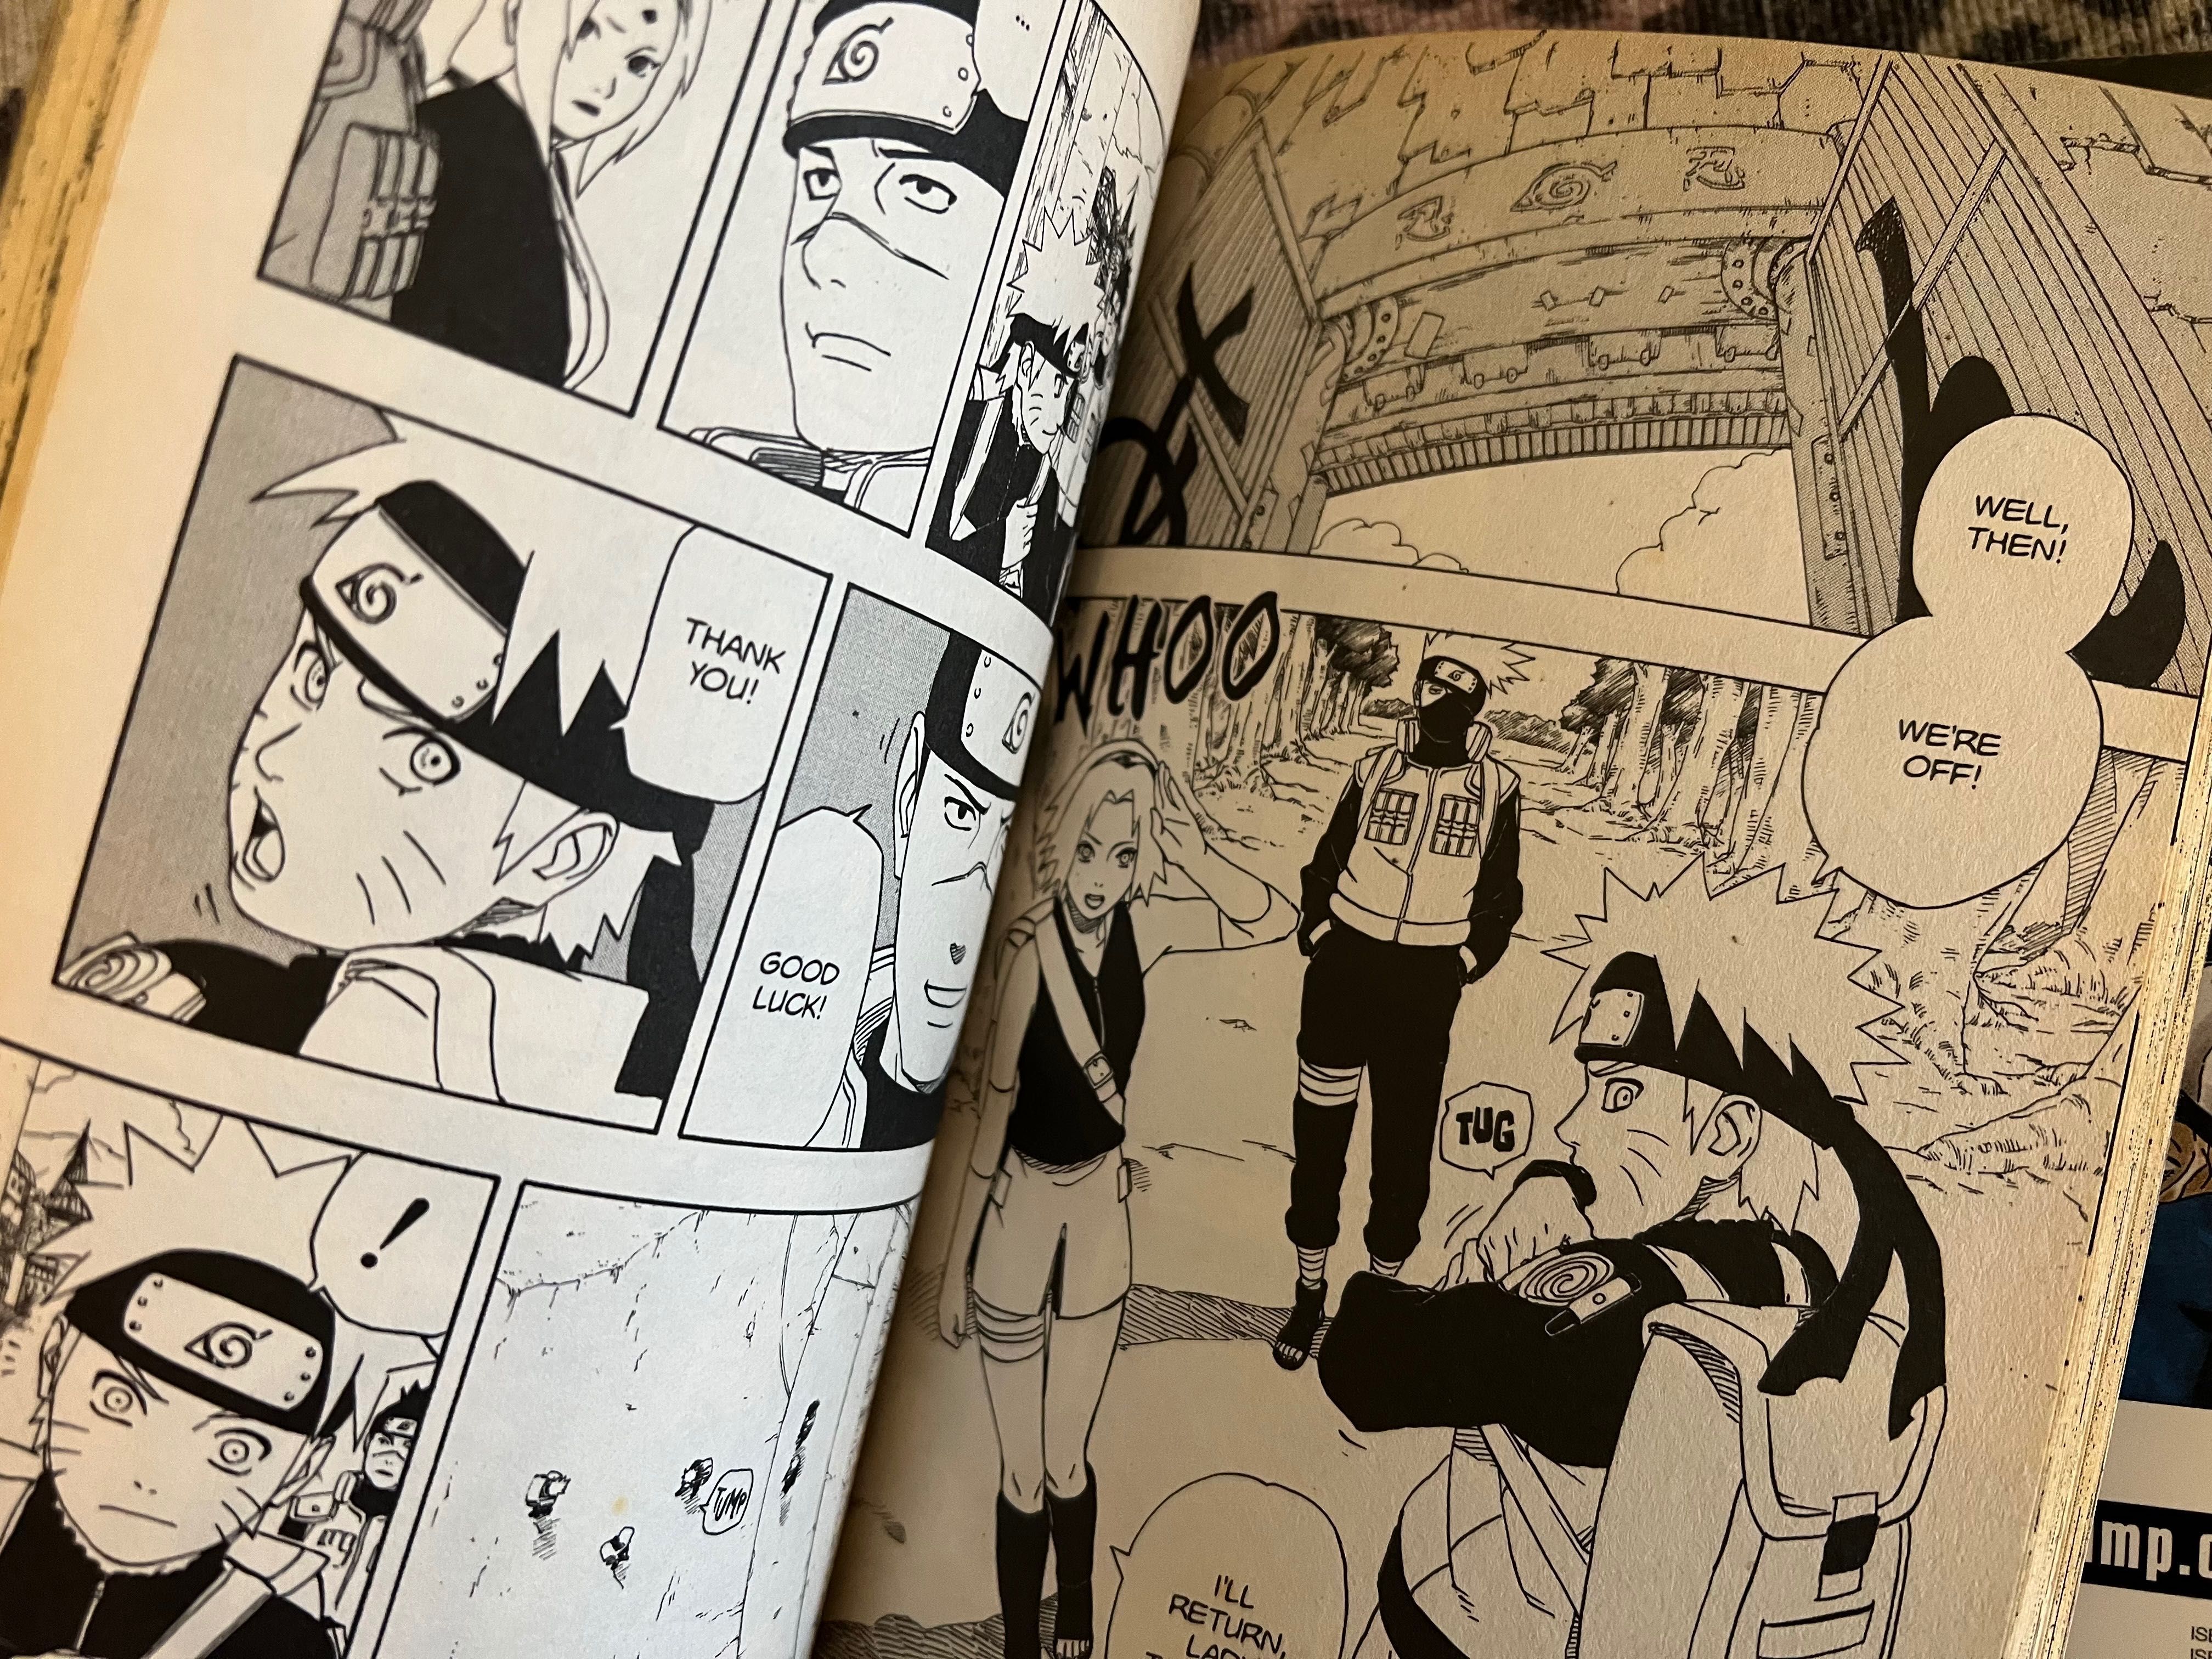 Naruto Manga Português - Livros - Revistas - OLX Portugal